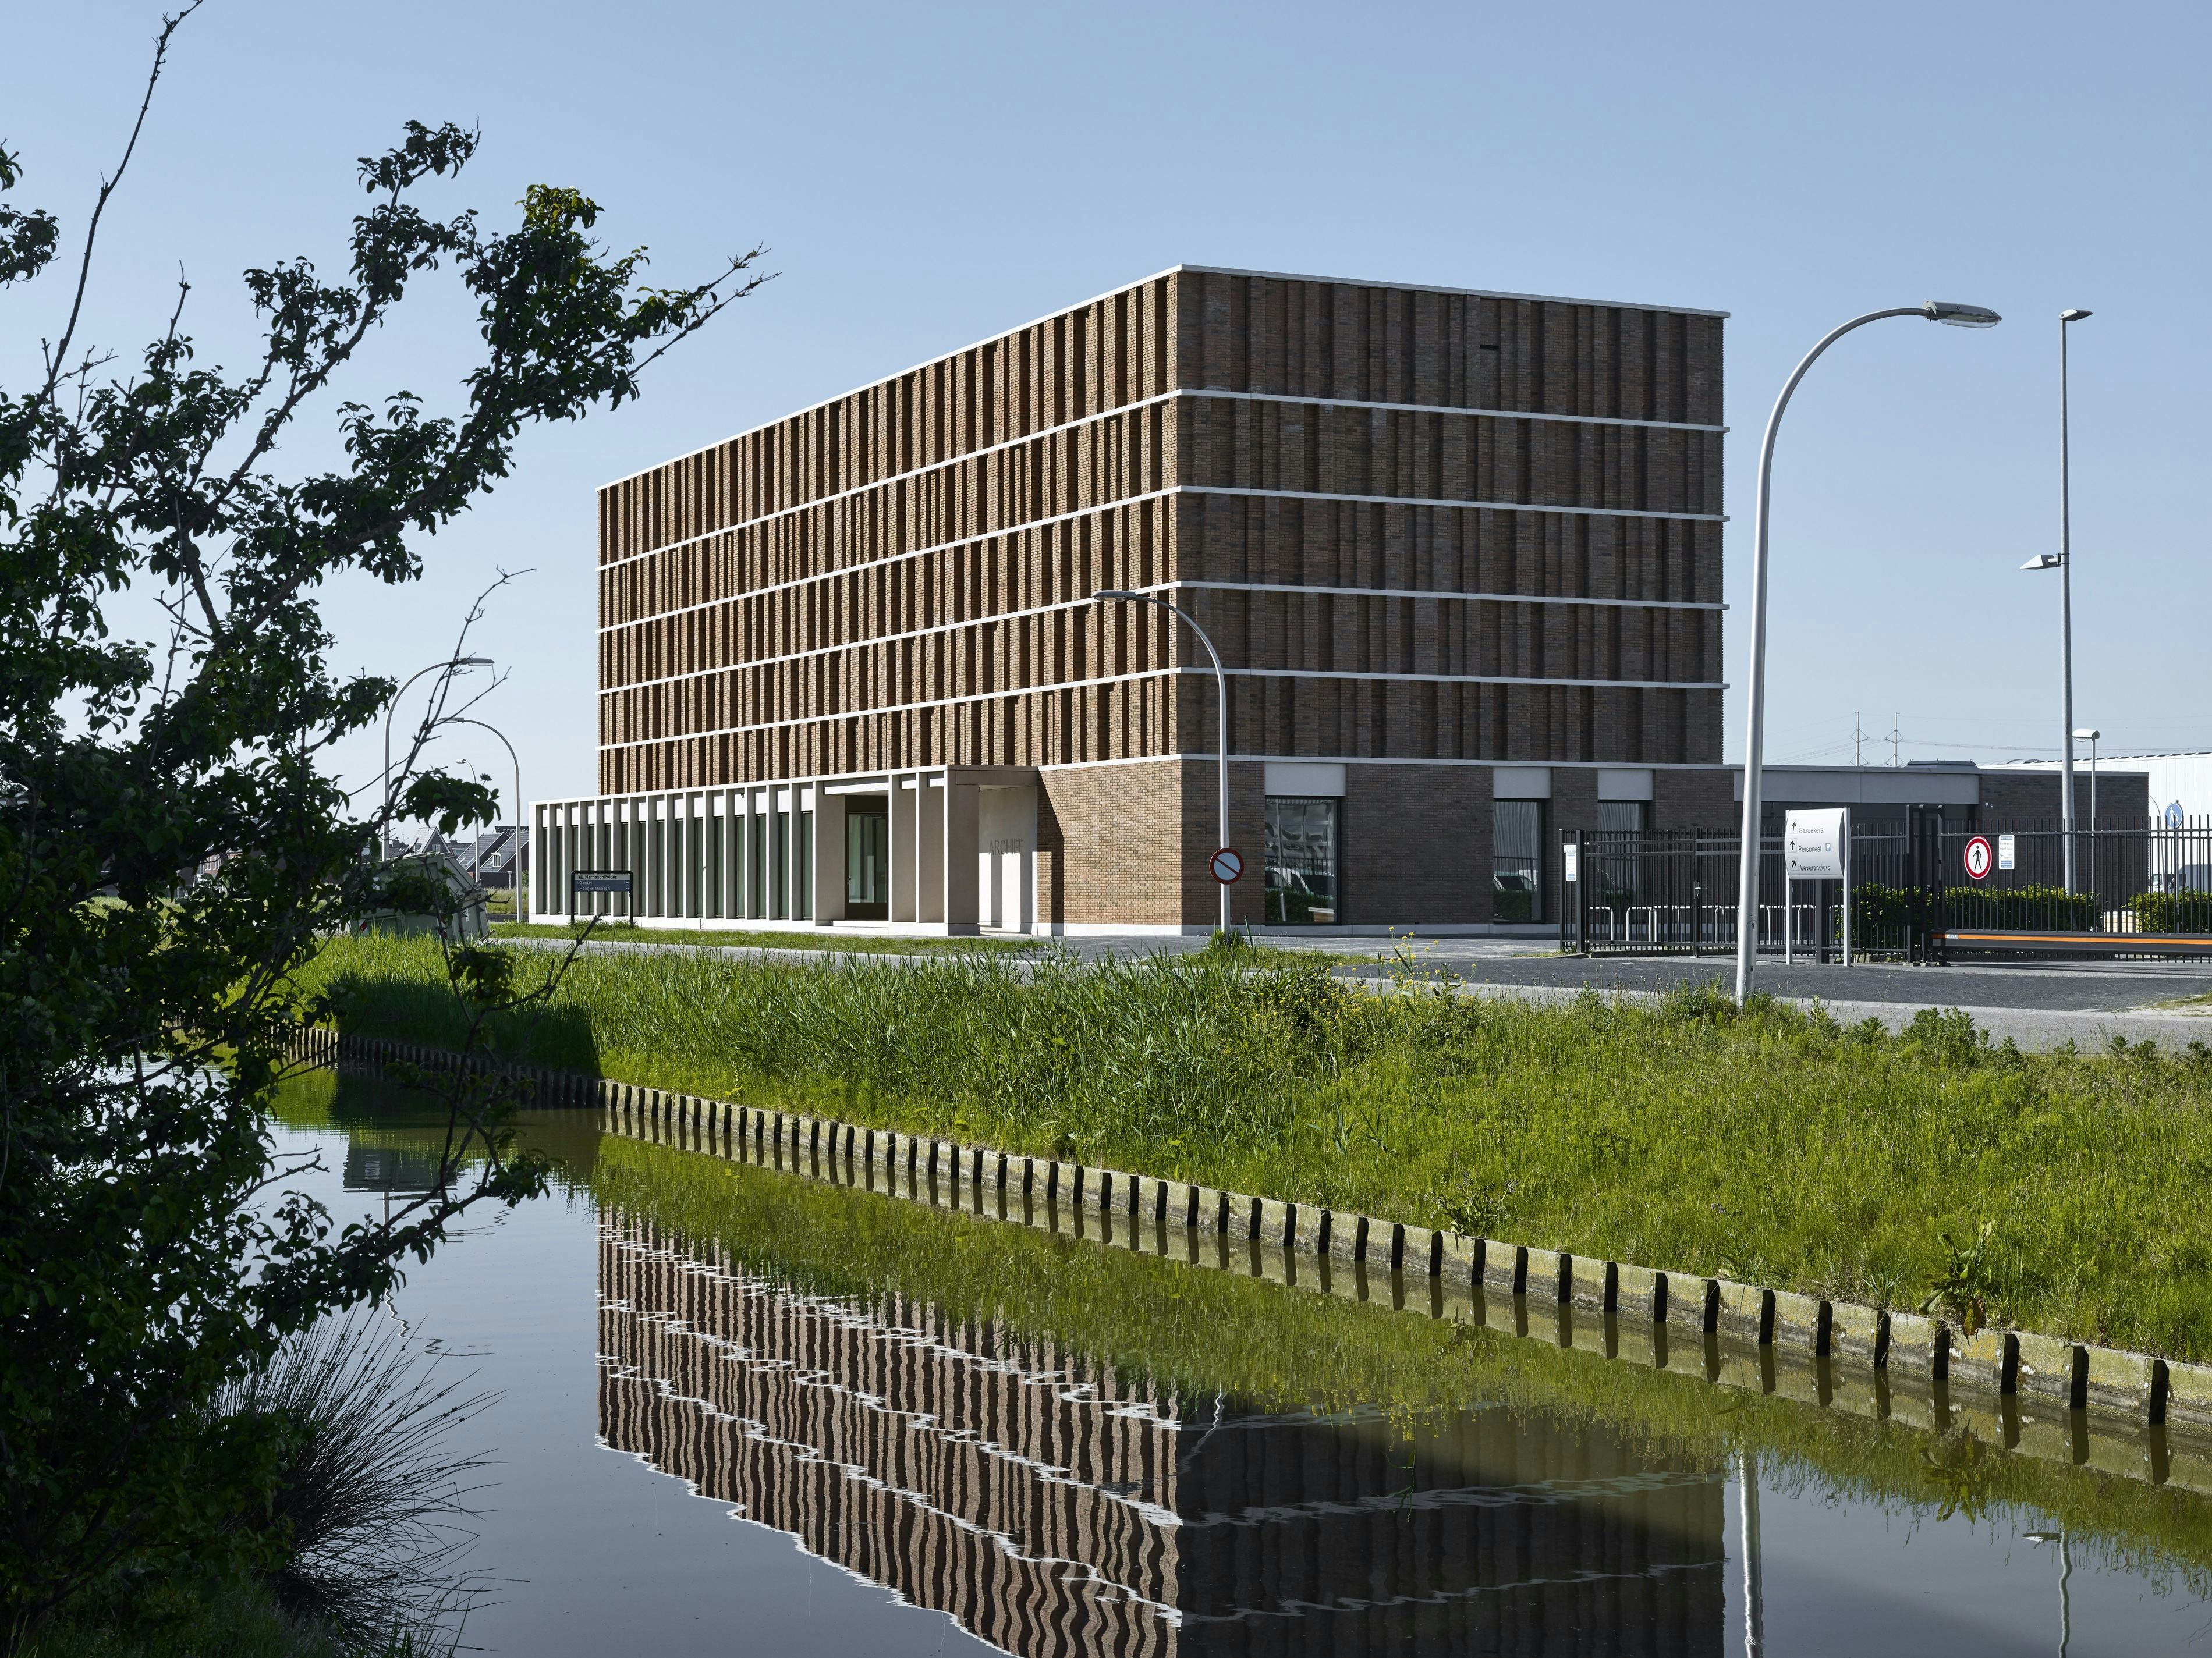 Het nieuwe stadsarchief ligt op een bedrijventerrein aan de rand van Delft. De architect zoekt met dit gebouw eerder aansluiting bij de woonwijk aan de overzijde van de straat, dan bij het bedrijventerrein zelf. Beeld Stefan Müller